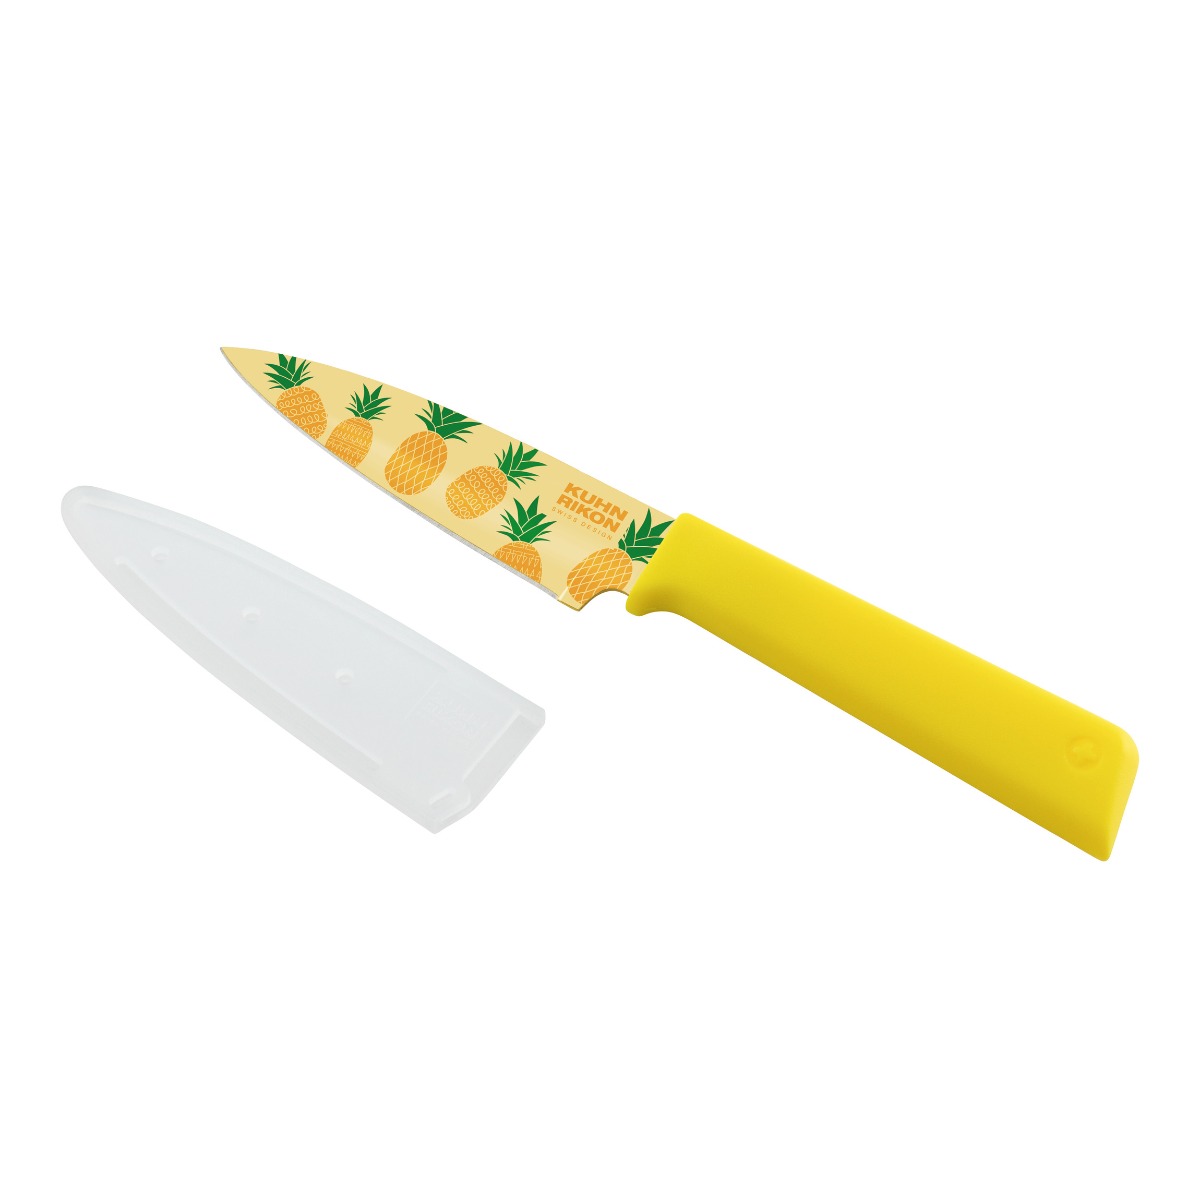 Kuhn Rikon - Colori(r)+ Tropics Paring Knife Pineapple